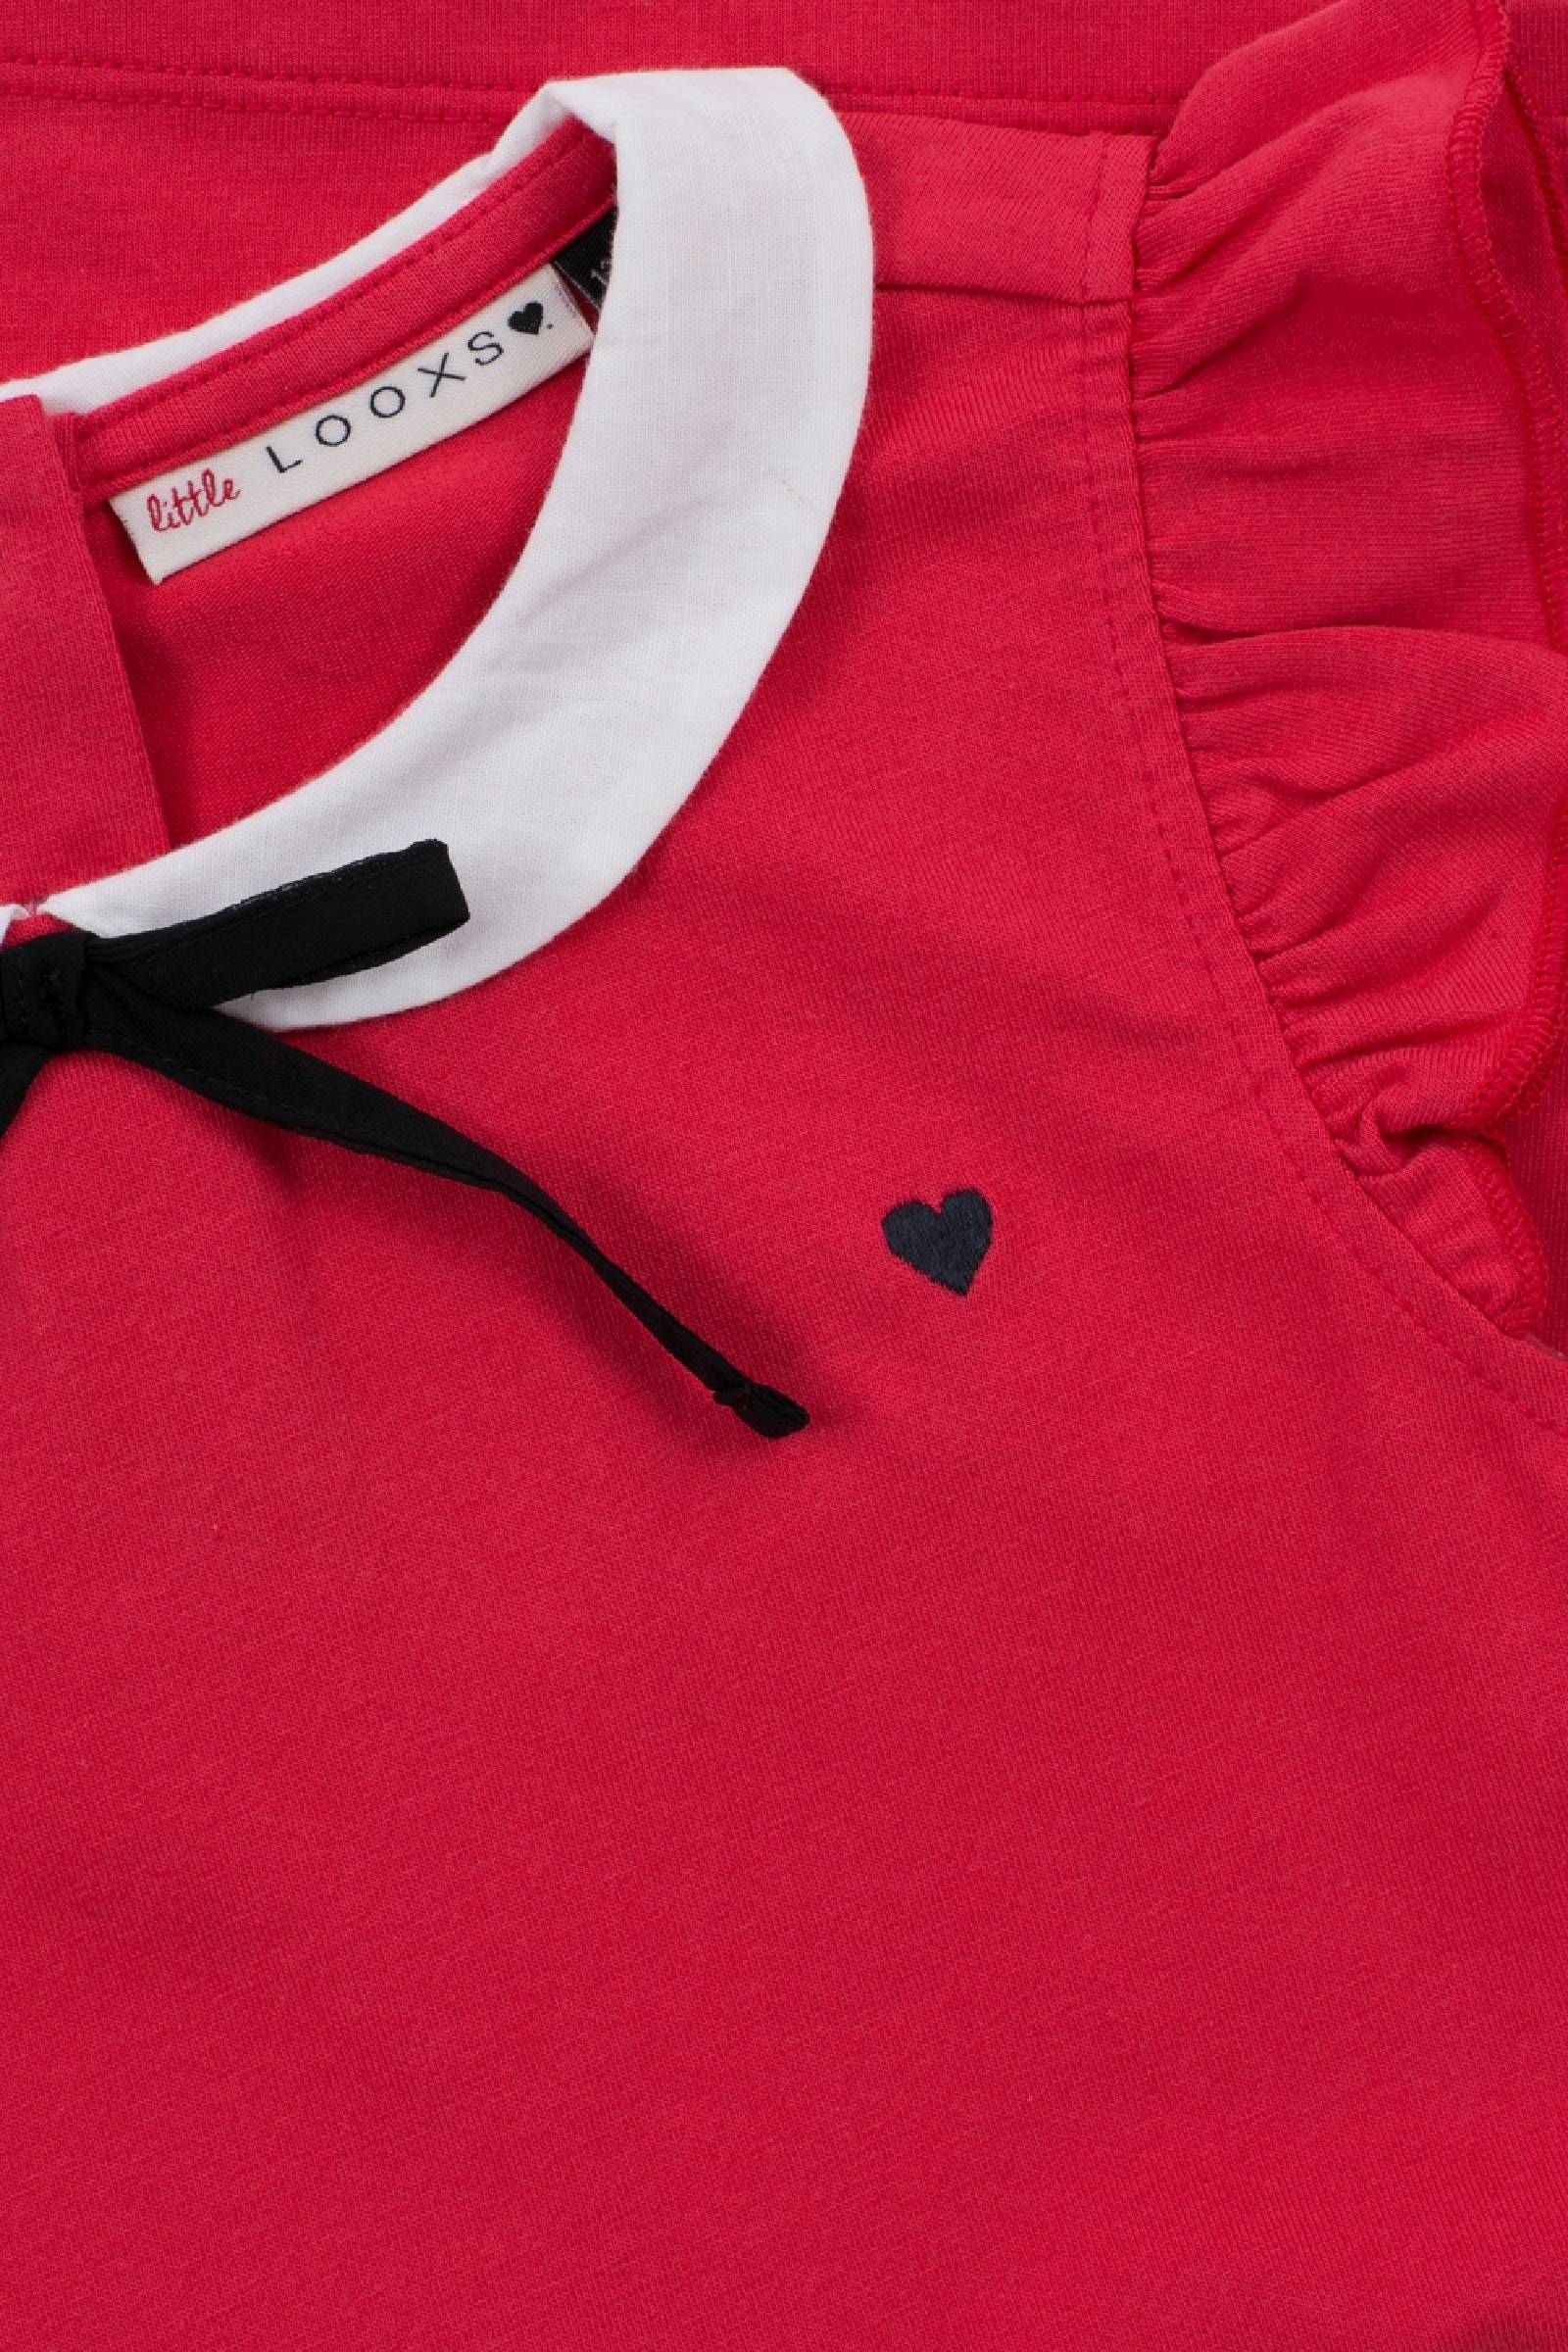 Meisjes Little top with collar van Little Looxs in de kleur Rose in maat 128.